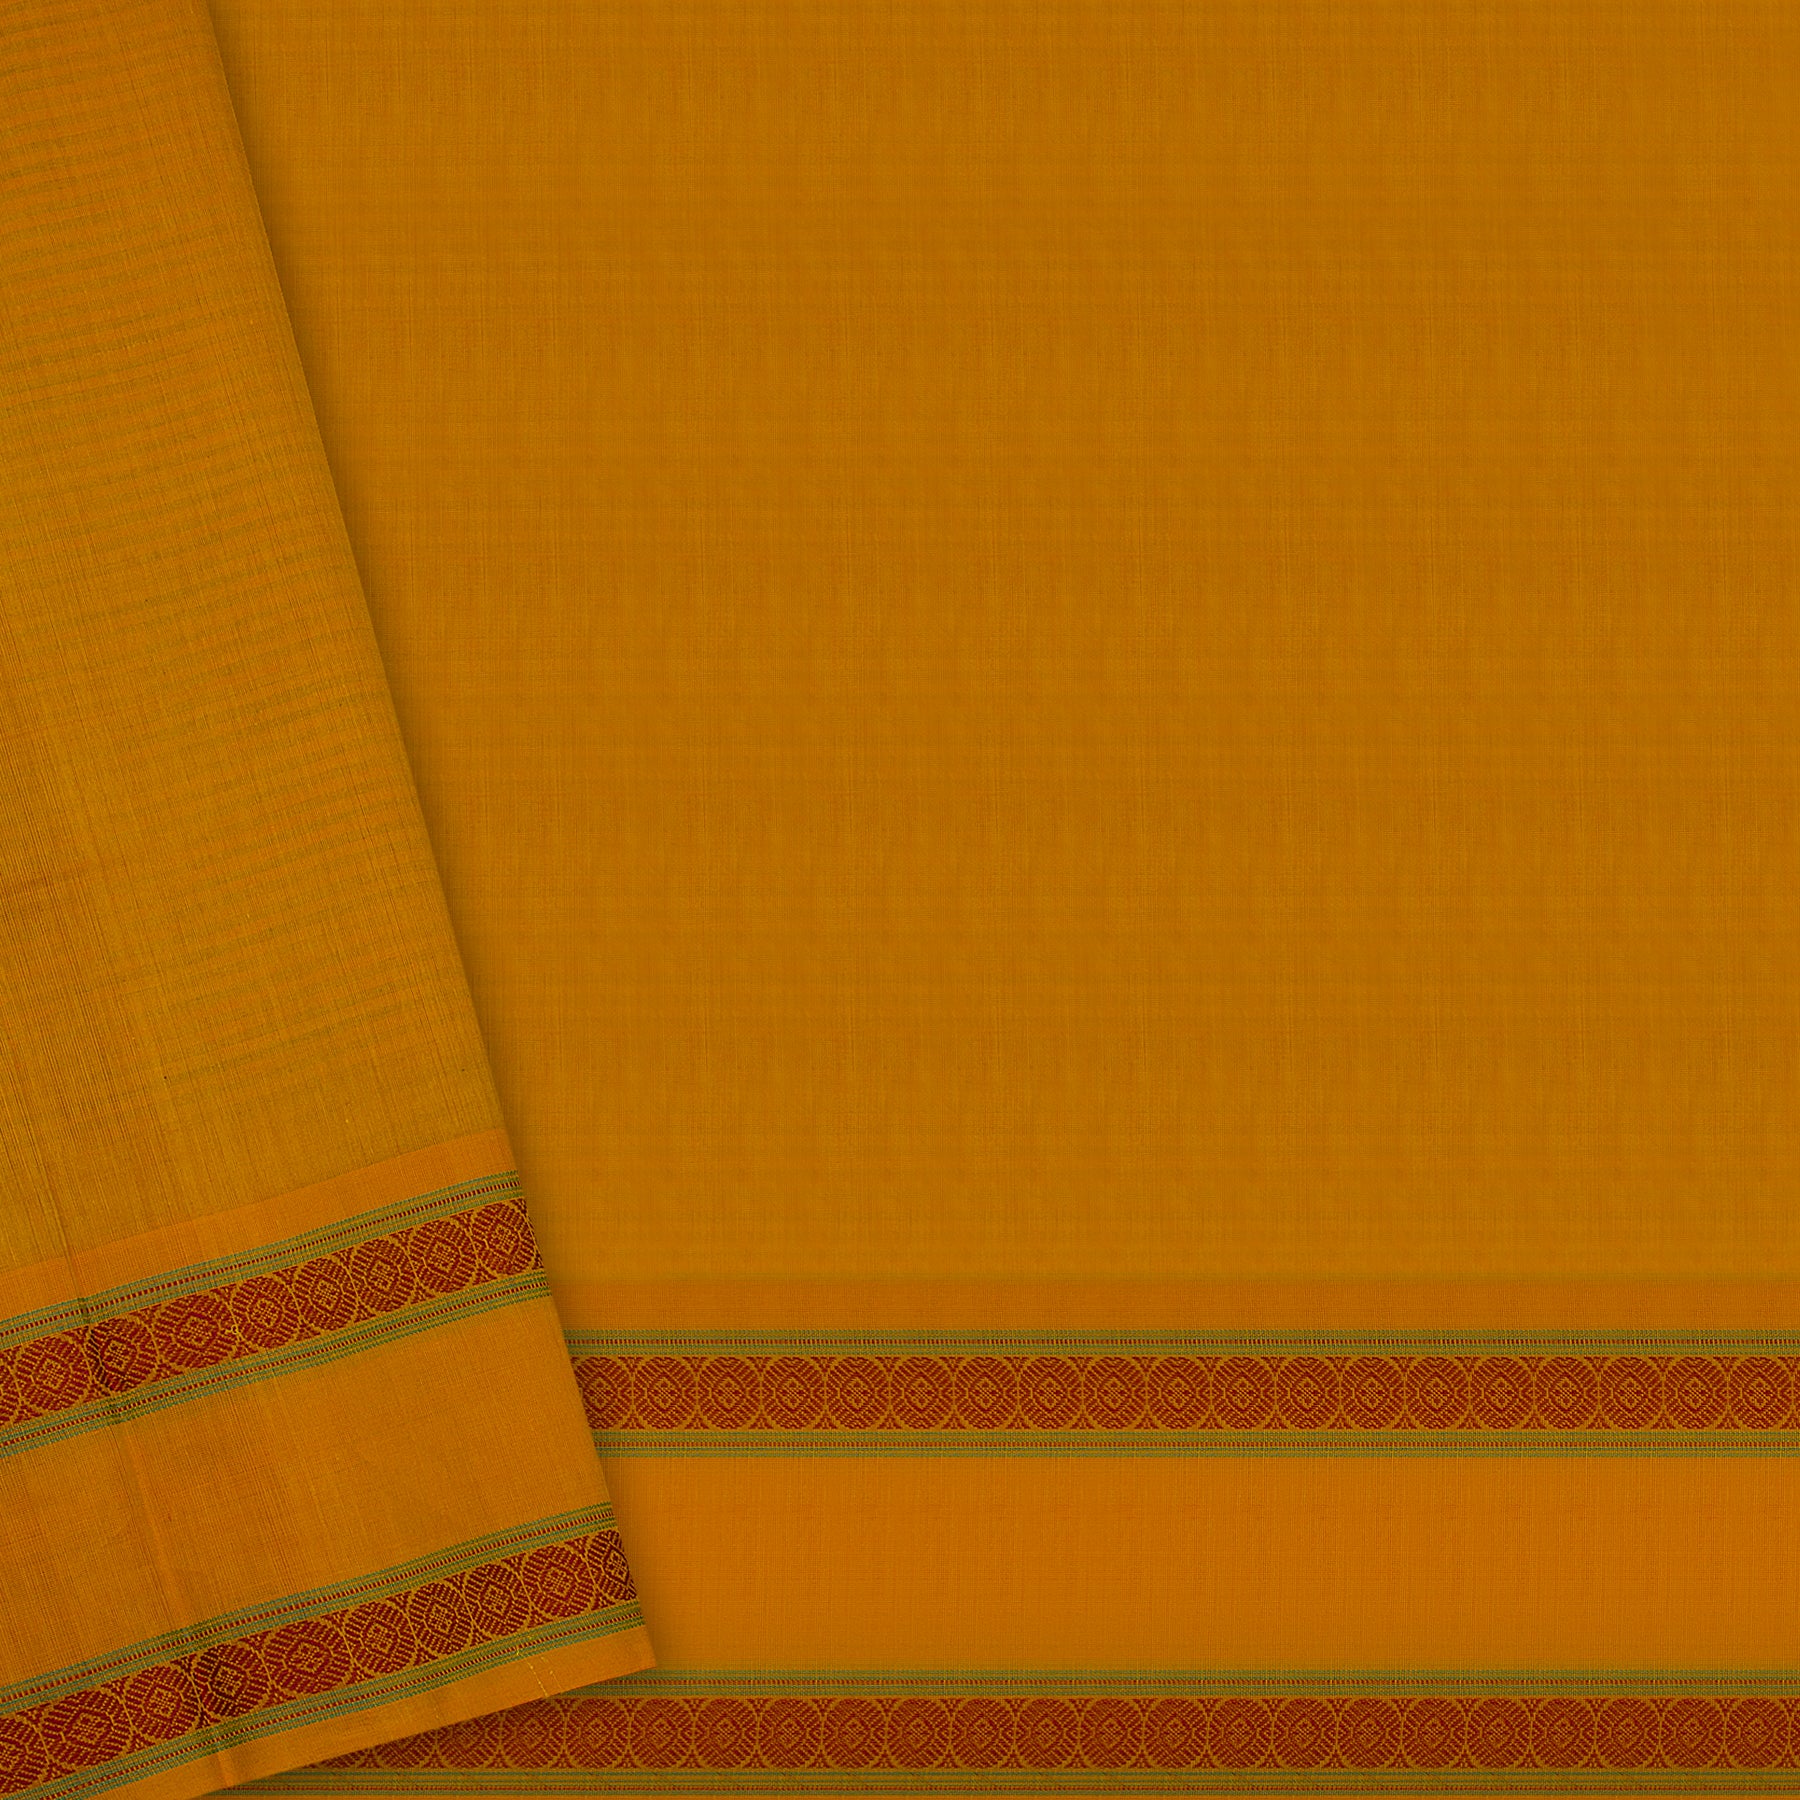 Kanakavalli Kanchi Cotton Sari 22-598-HS003-00225 - Blouse View